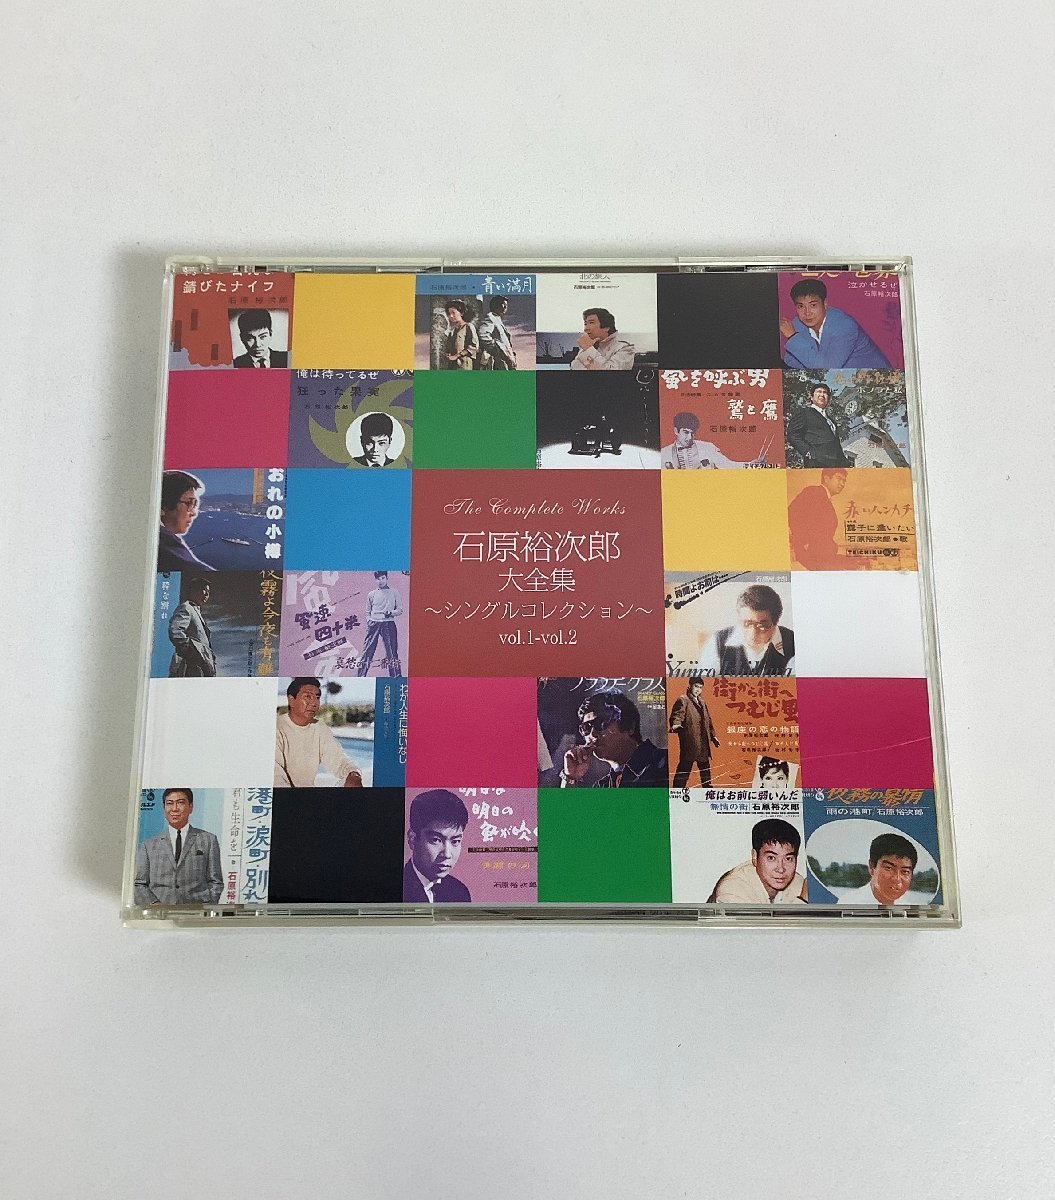 CD】石原裕次郎大全集 ~シングルコレクション~ Vol.1 - Vol.2 2枚組